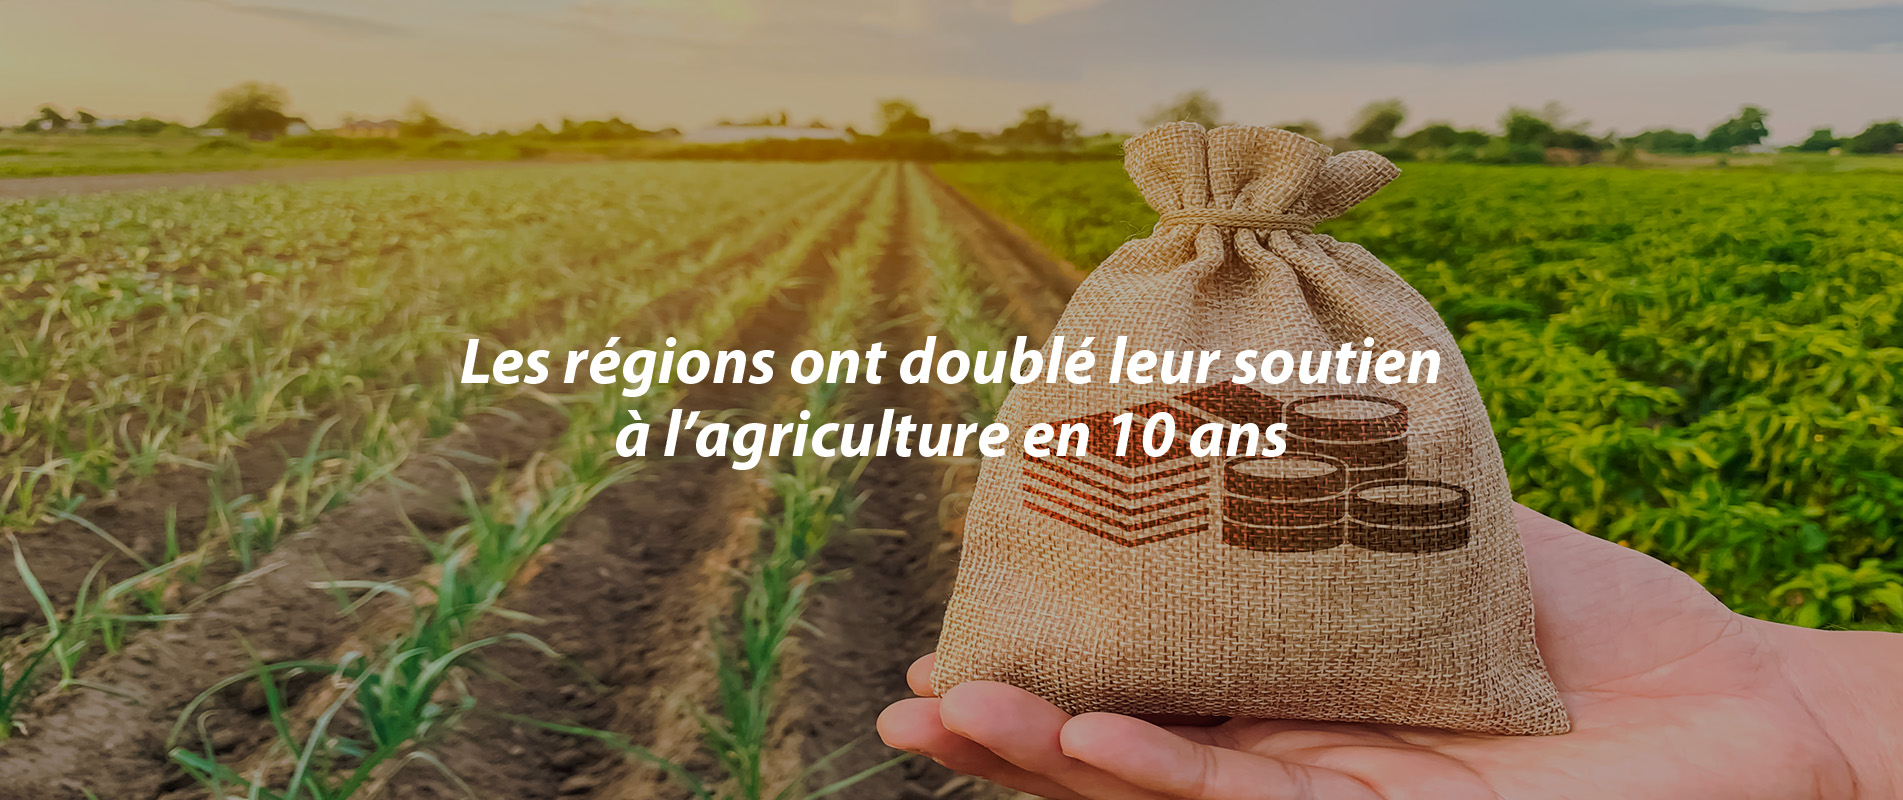 Les régions ont doublé leur soutien à l’agriculture en dix ans